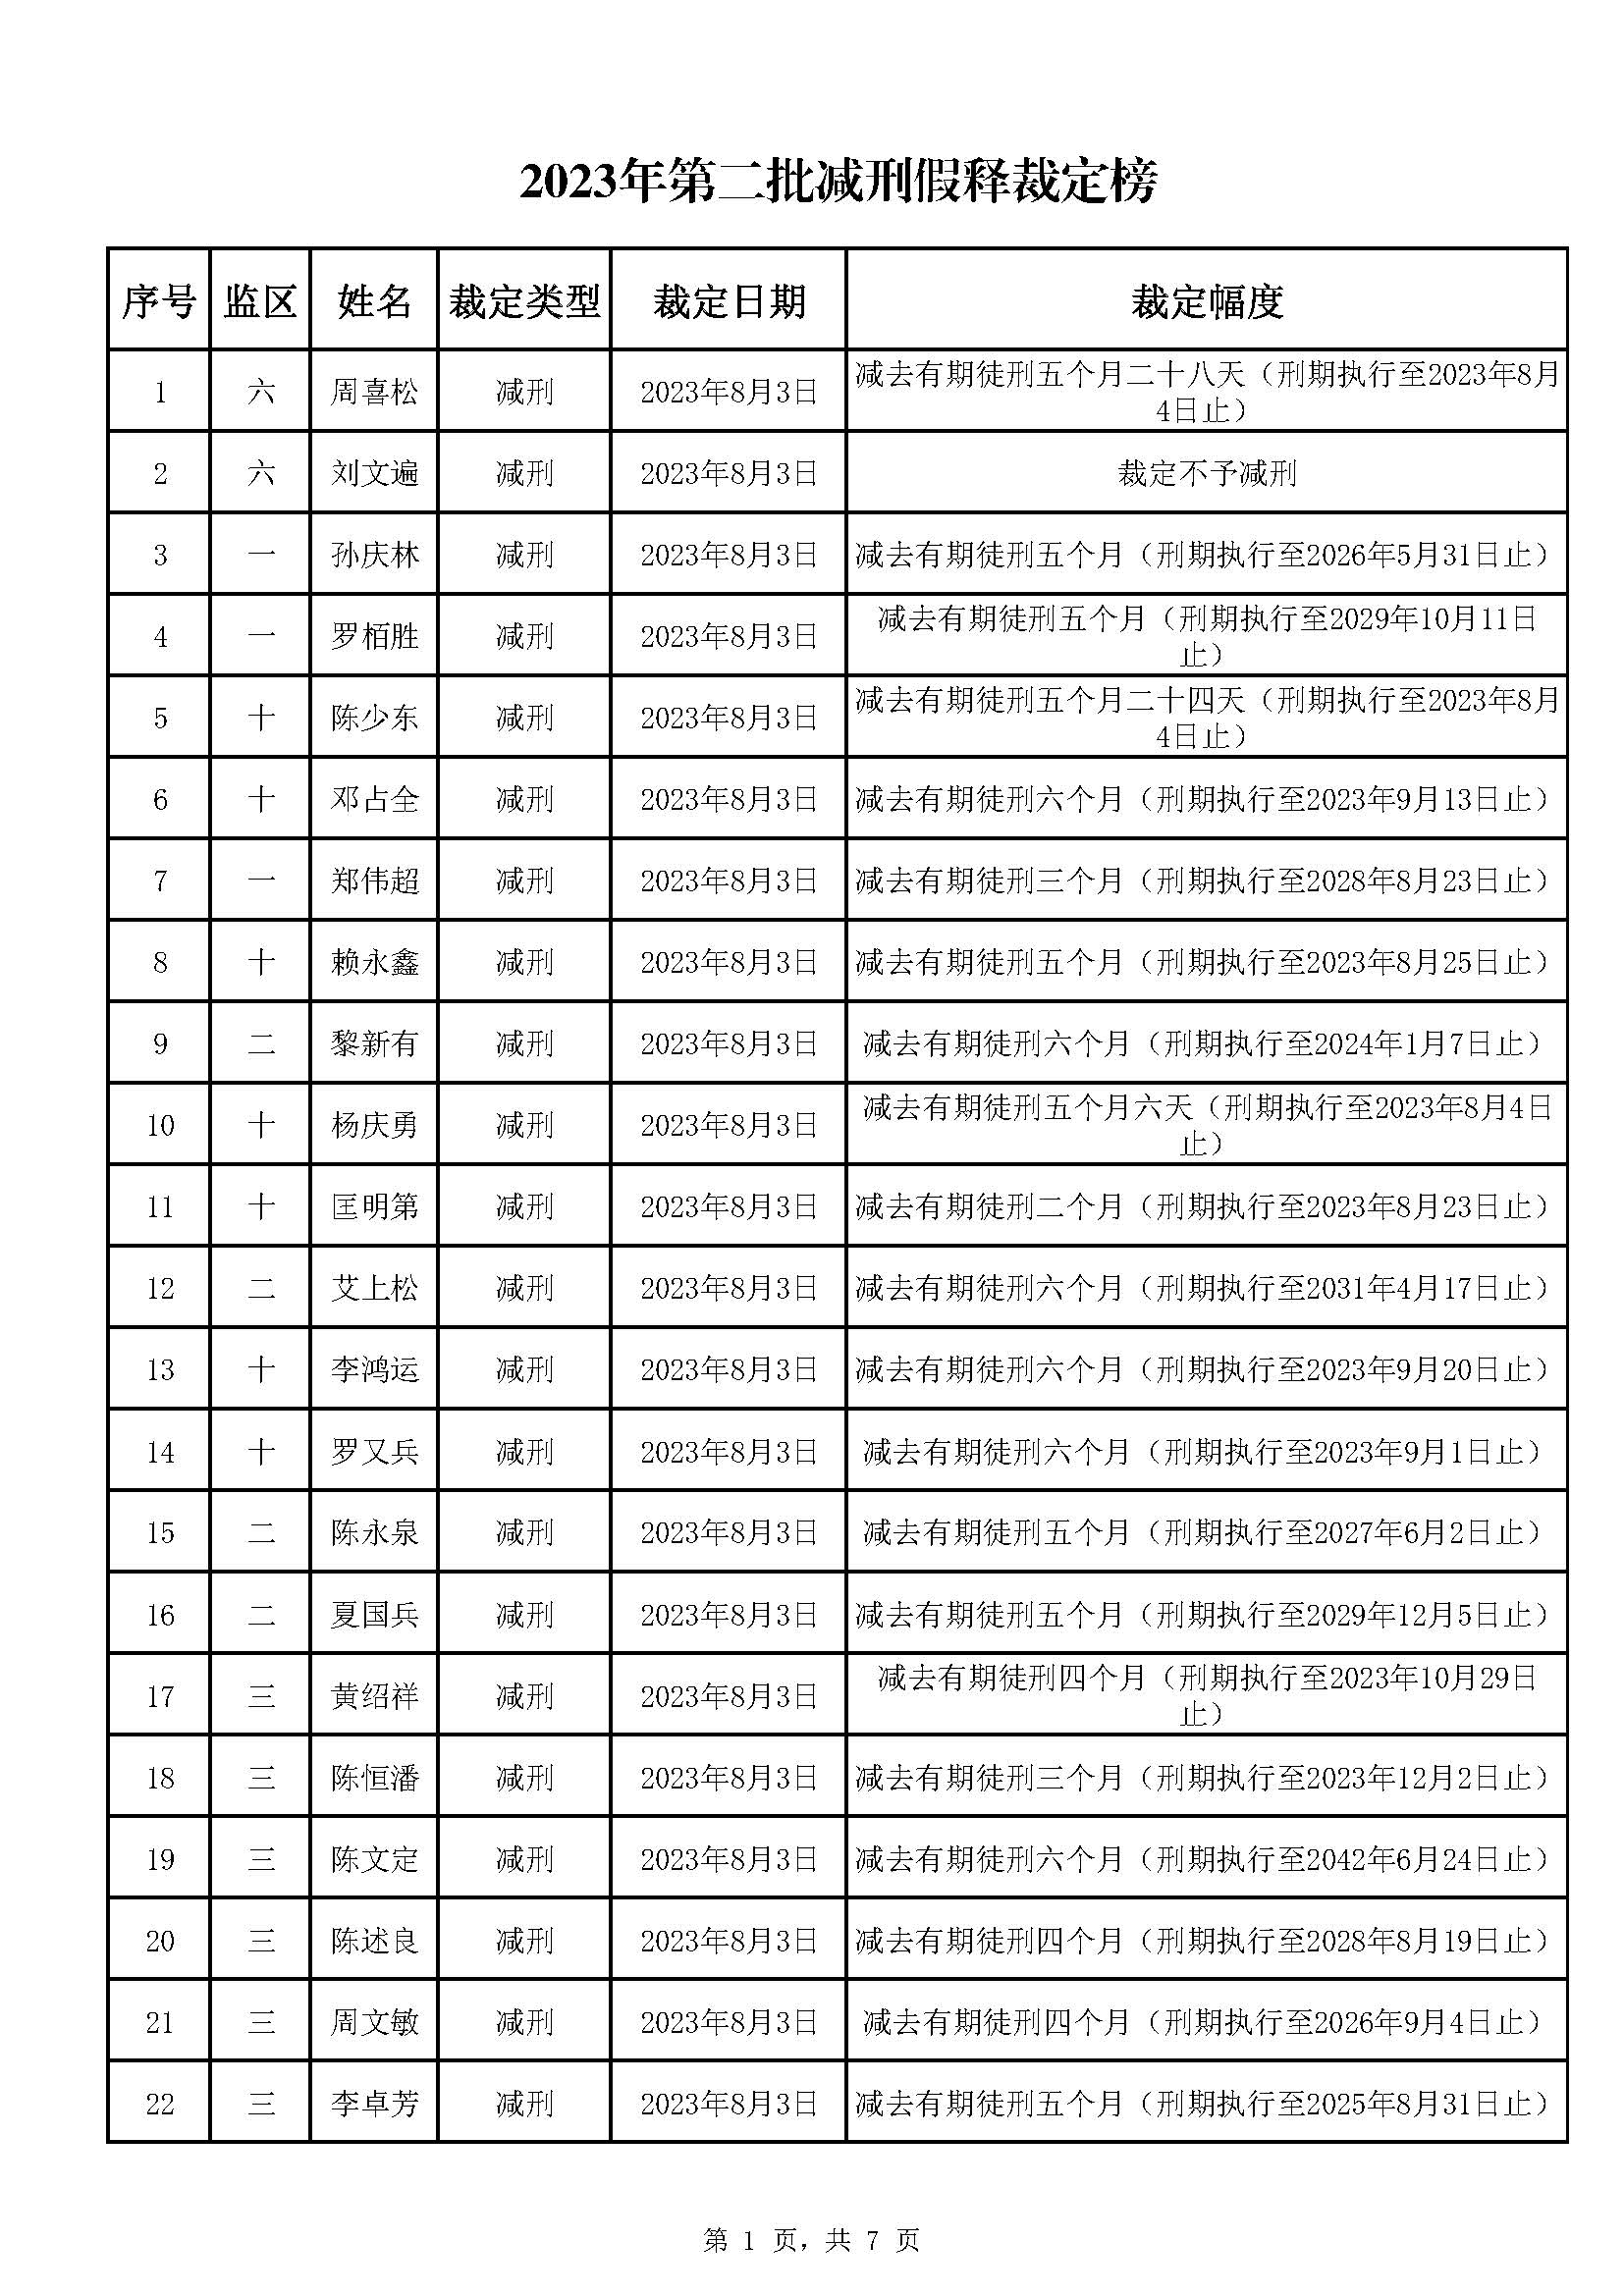 广东省明康监狱2023年第二批减刑假释裁定榜_页面_1.jpg